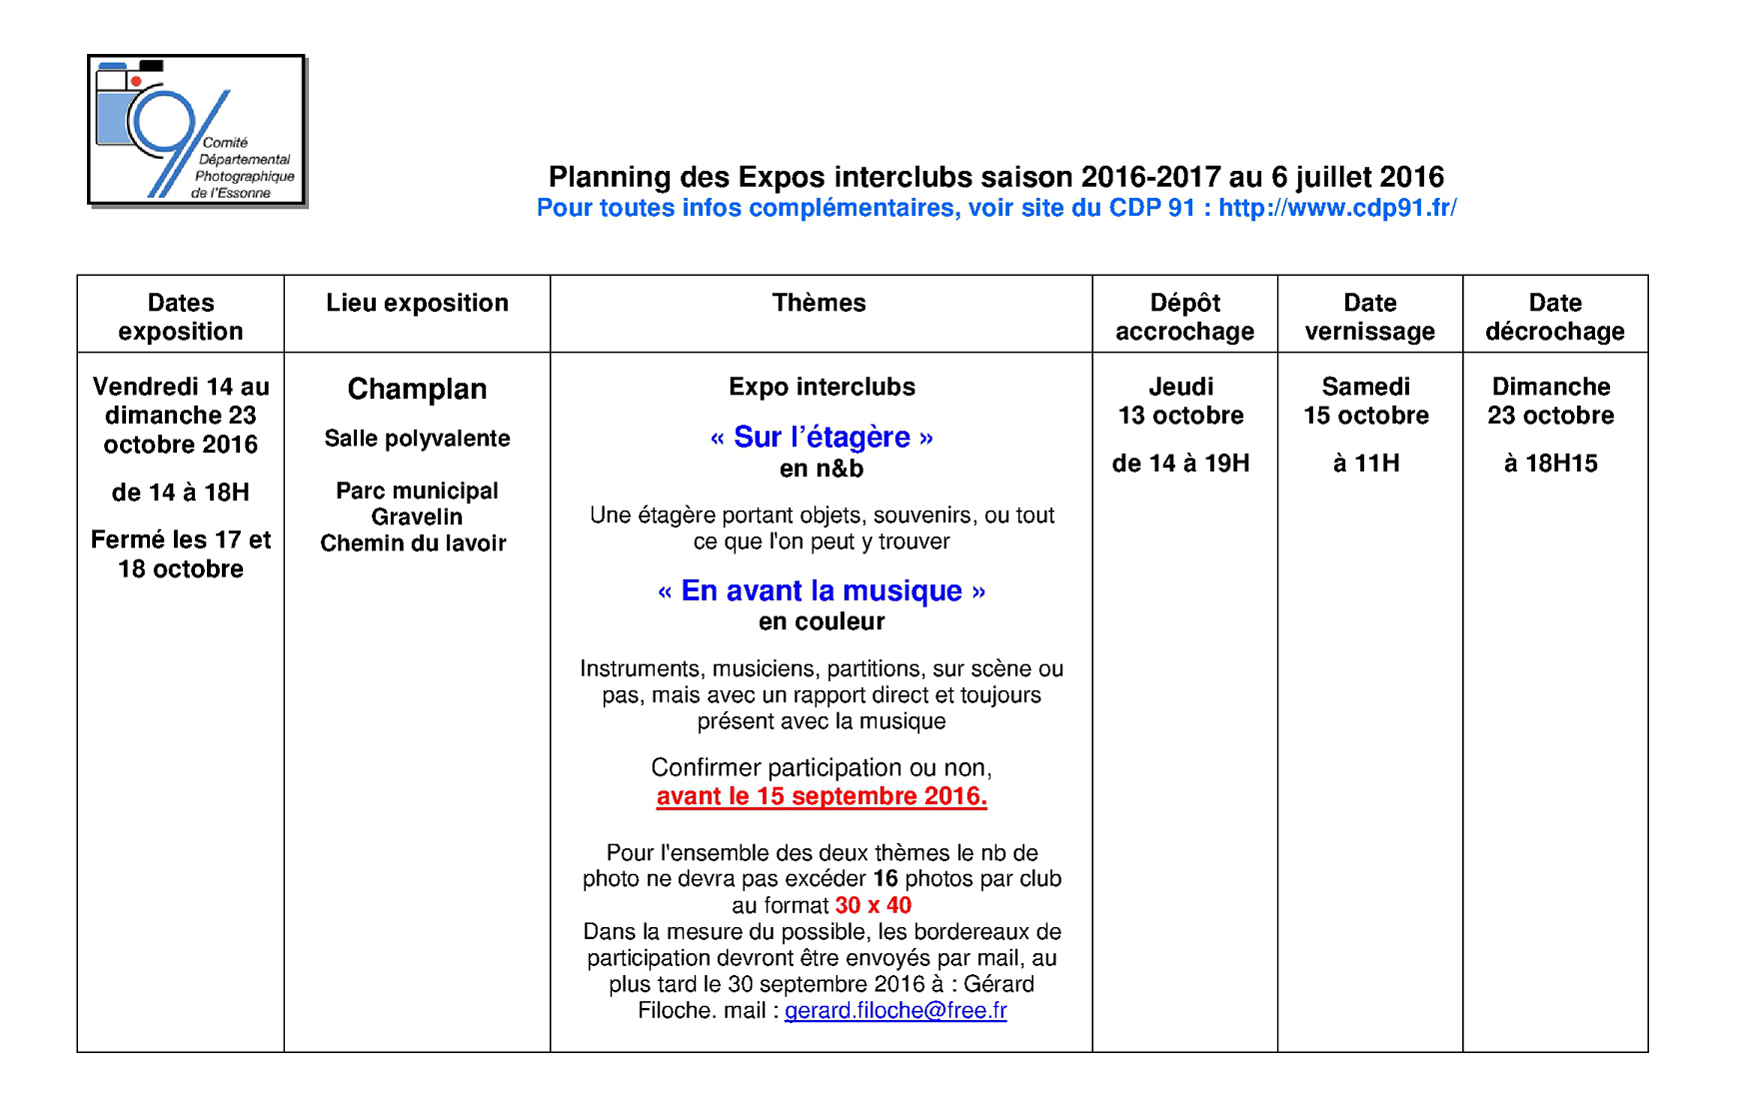 Planning prévisionnel des expos interclubs CDP91 saison 2016-17 version 02 page 1